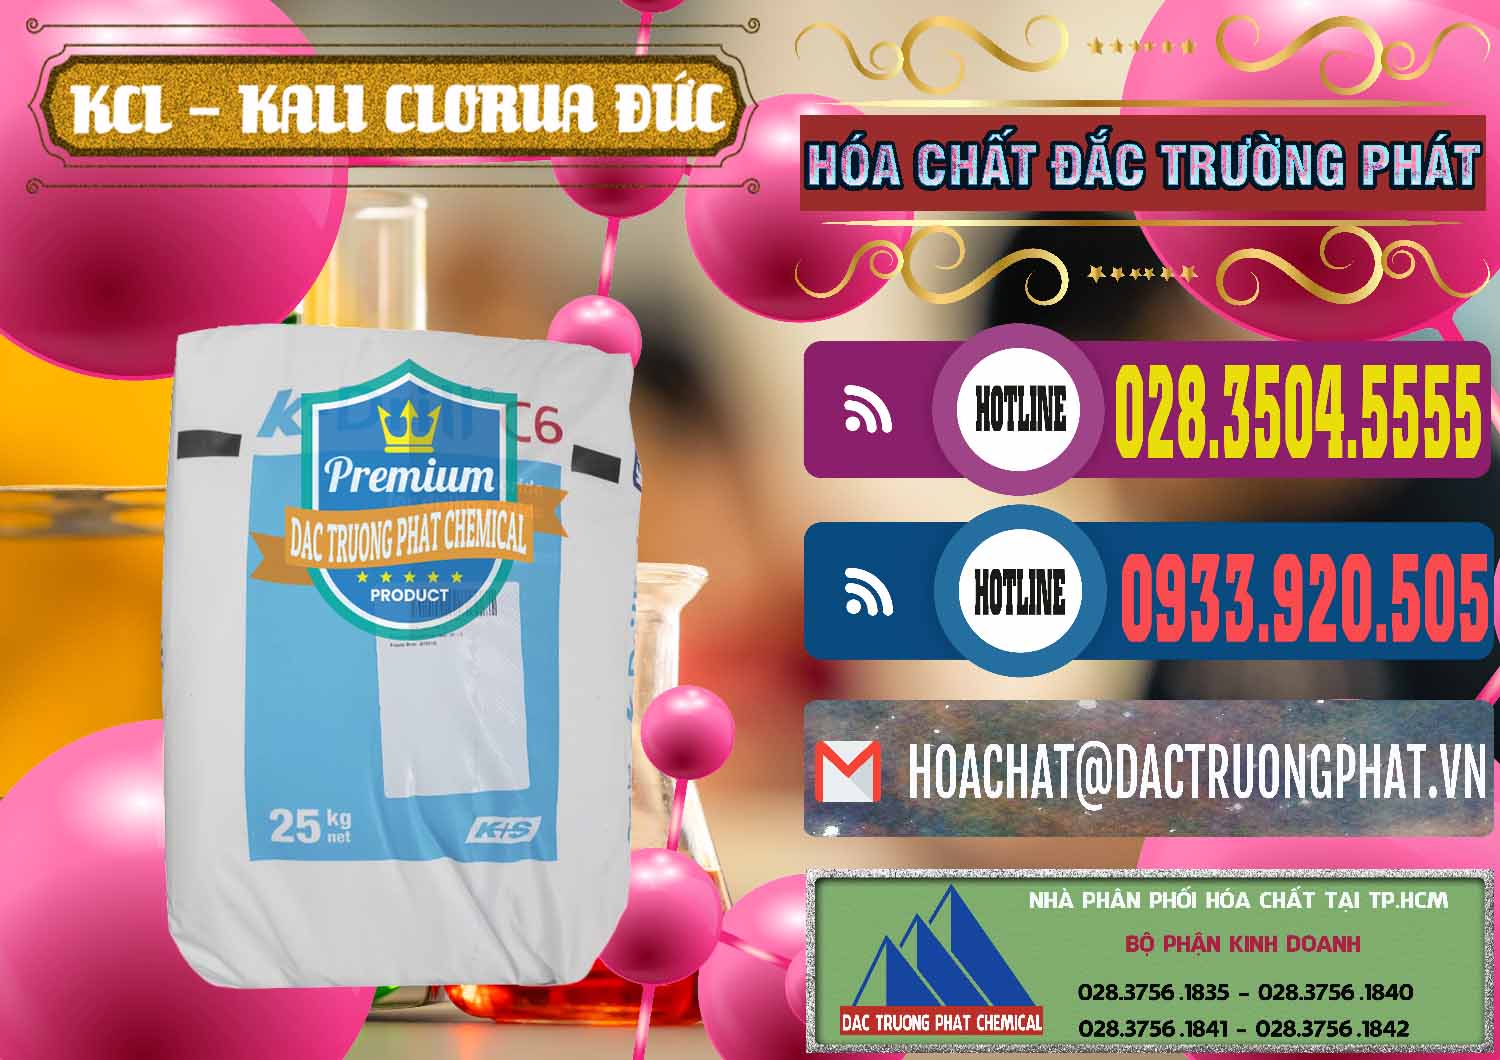 Chuyên phân phối & bán KCL – Kali Clorua Trắng K DRILL Đức Germany - 0428 - Chuyên phân phối & cung ứng hóa chất tại TP.HCM - muabanhoachat.com.vn